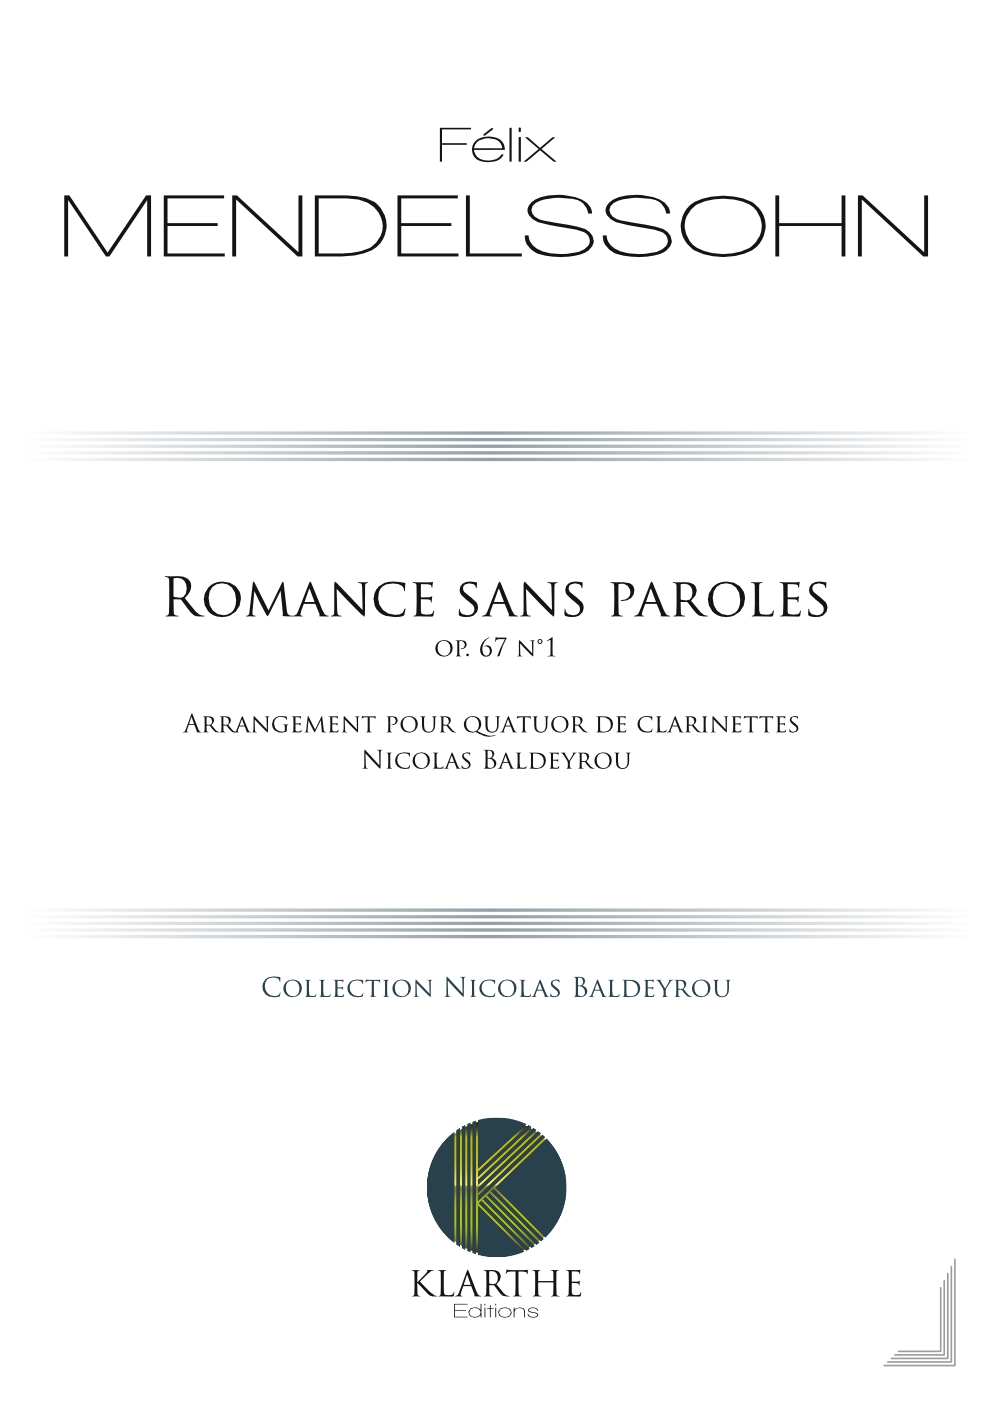 Romance sans paroles opus 67, n1
 (MENDELSSOHN-BARTHOLDY FELIX)